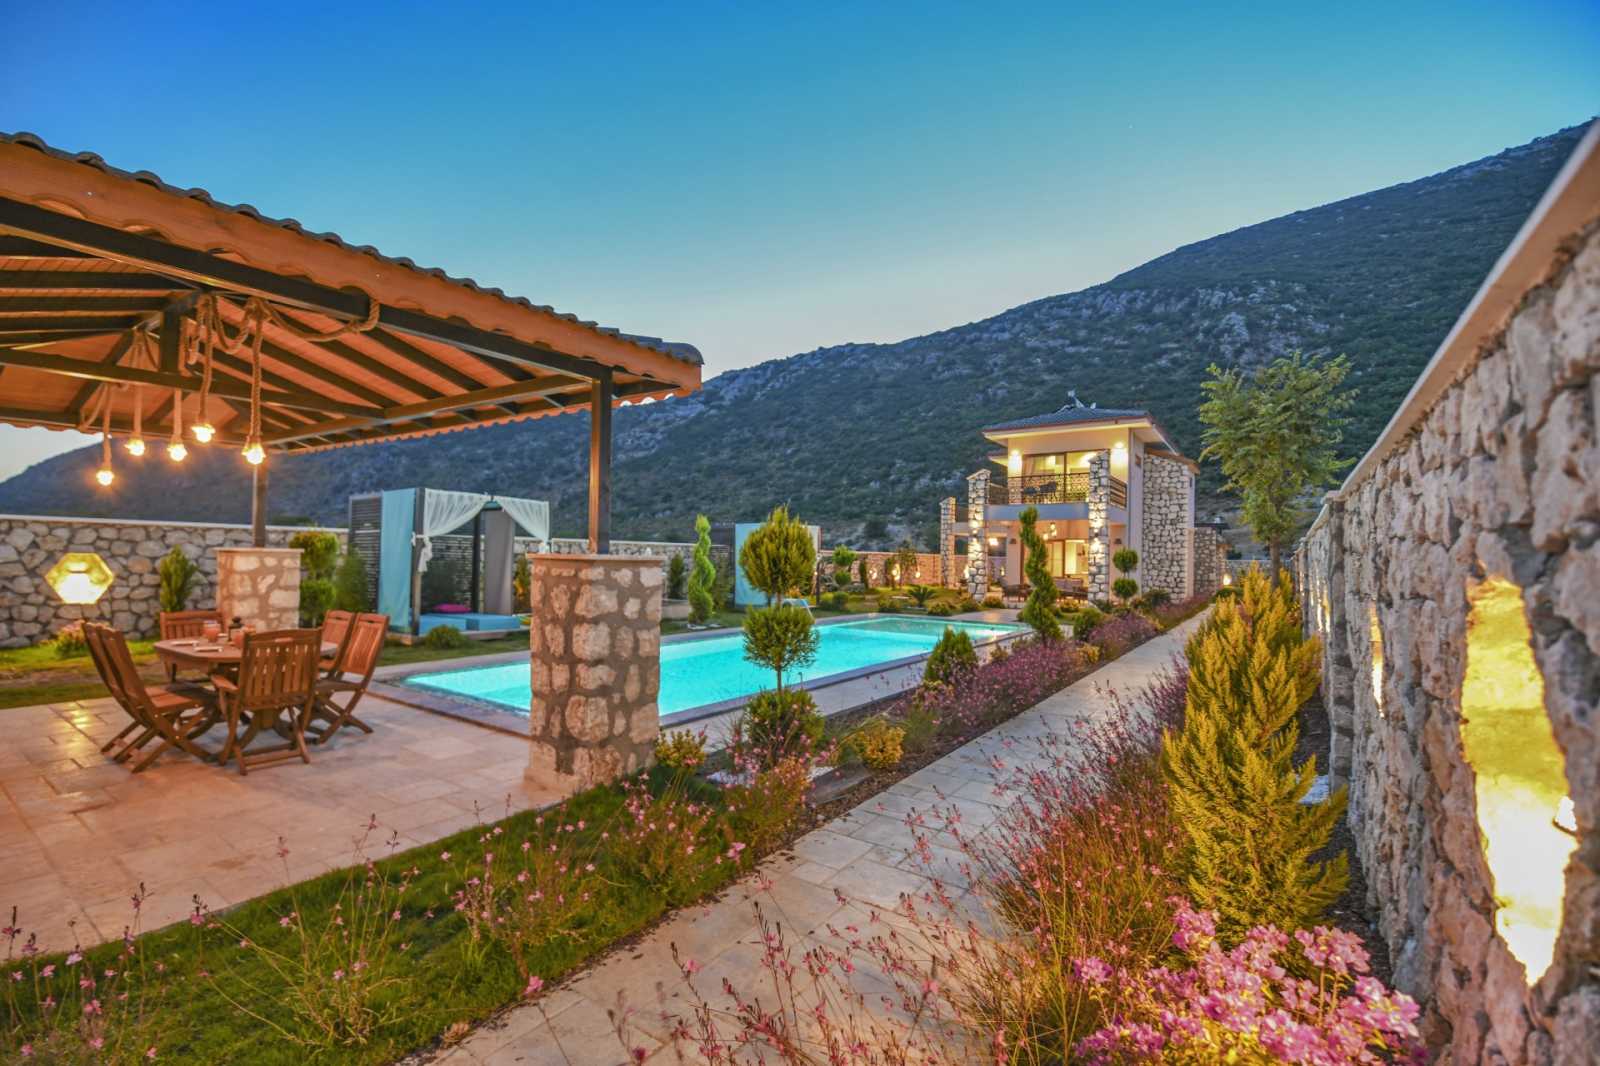 Tranquil Spa Villa In Kalkan - Vast private plot